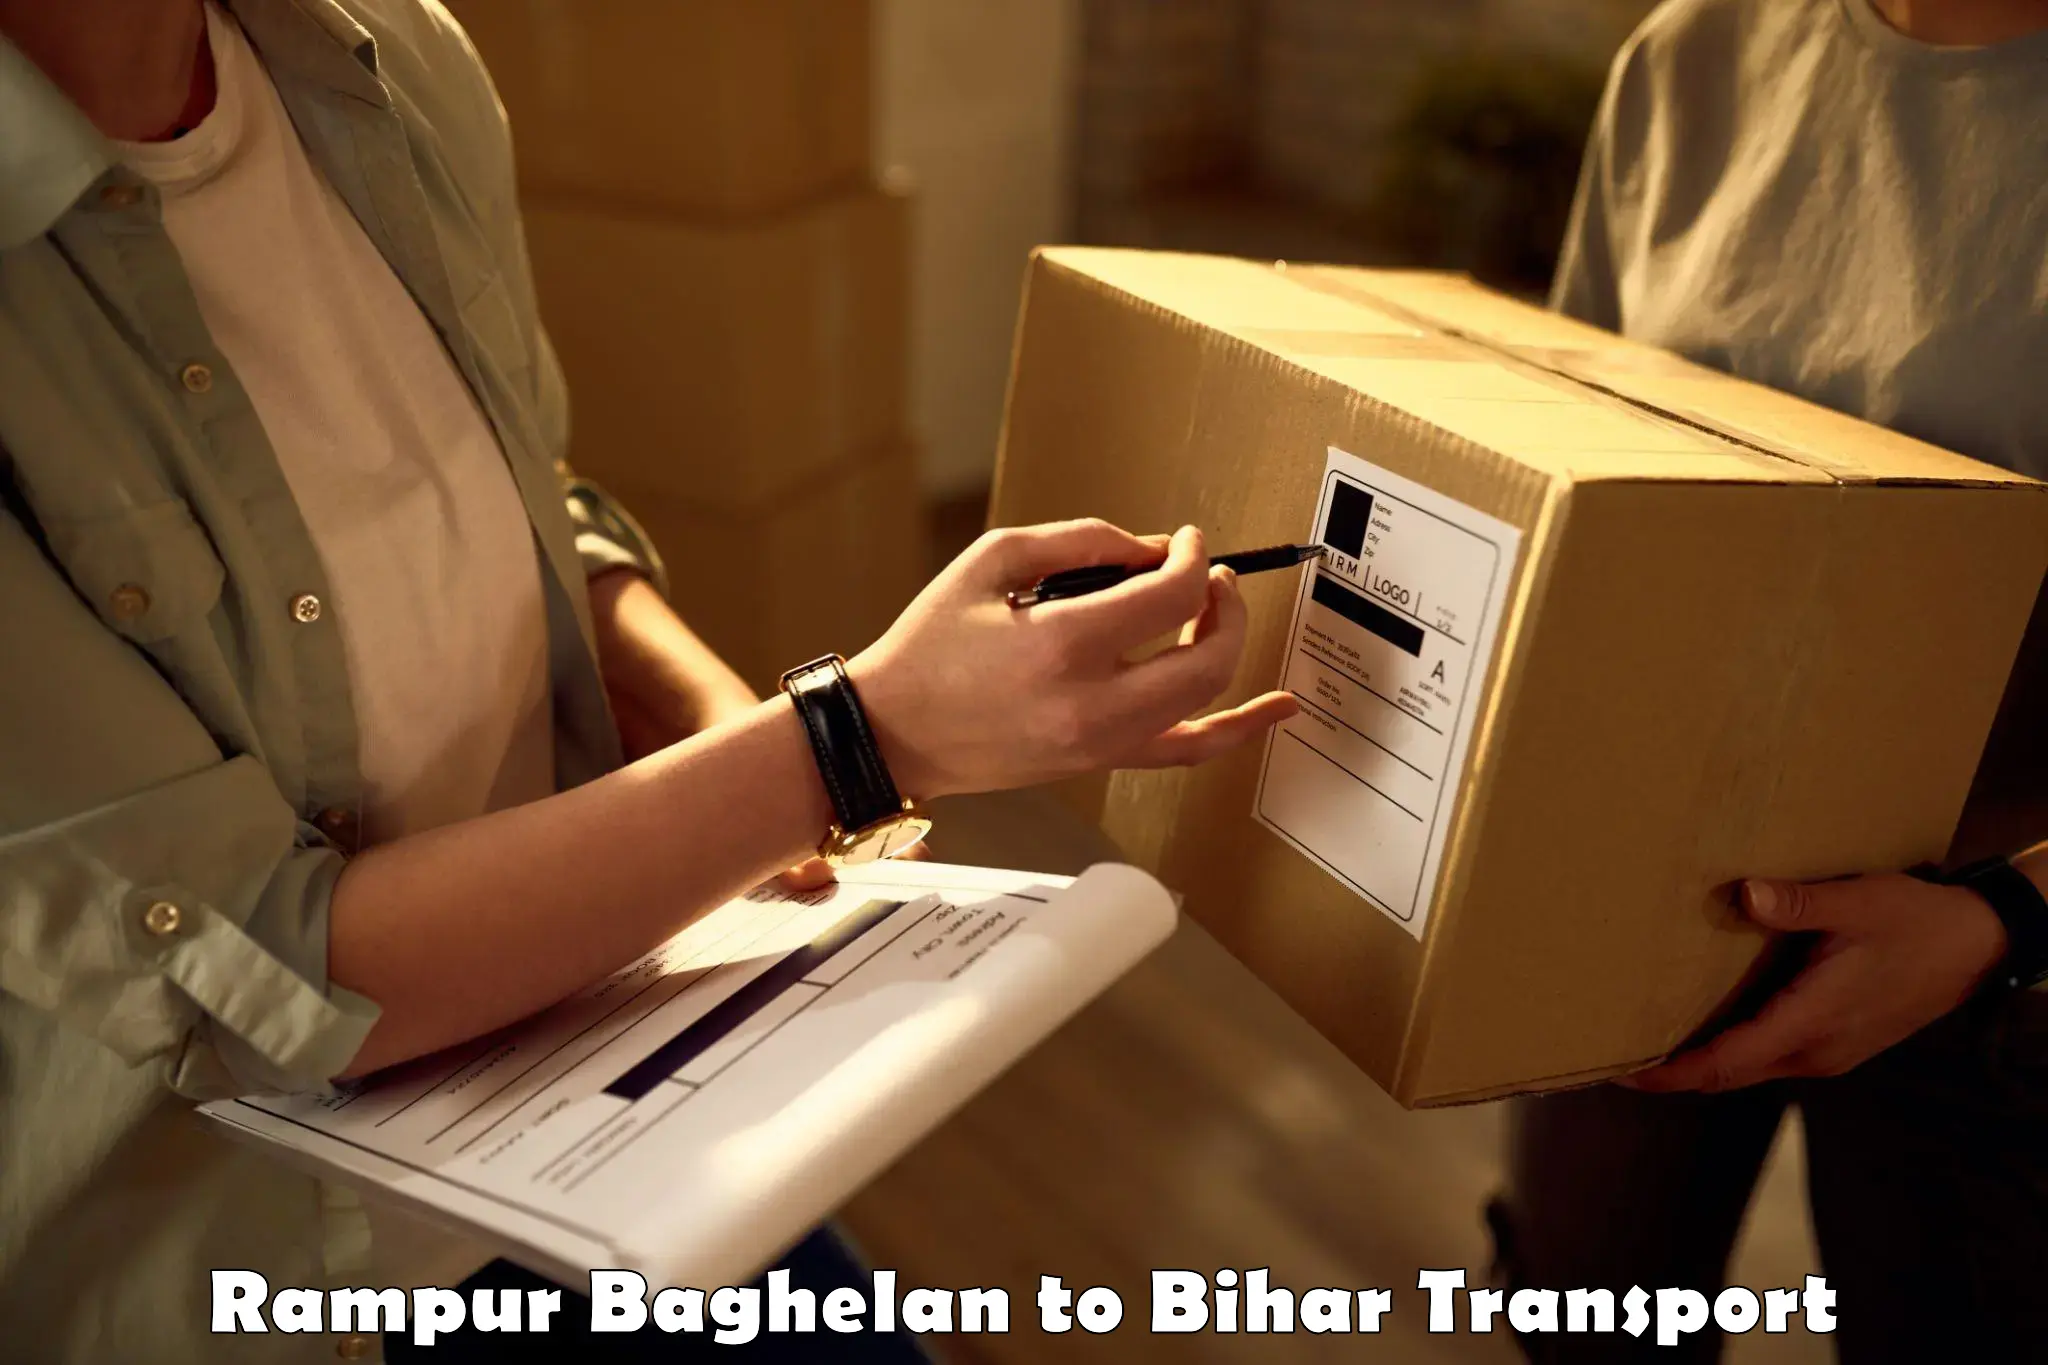 Furniture transport service Rampur Baghelan to Bihar